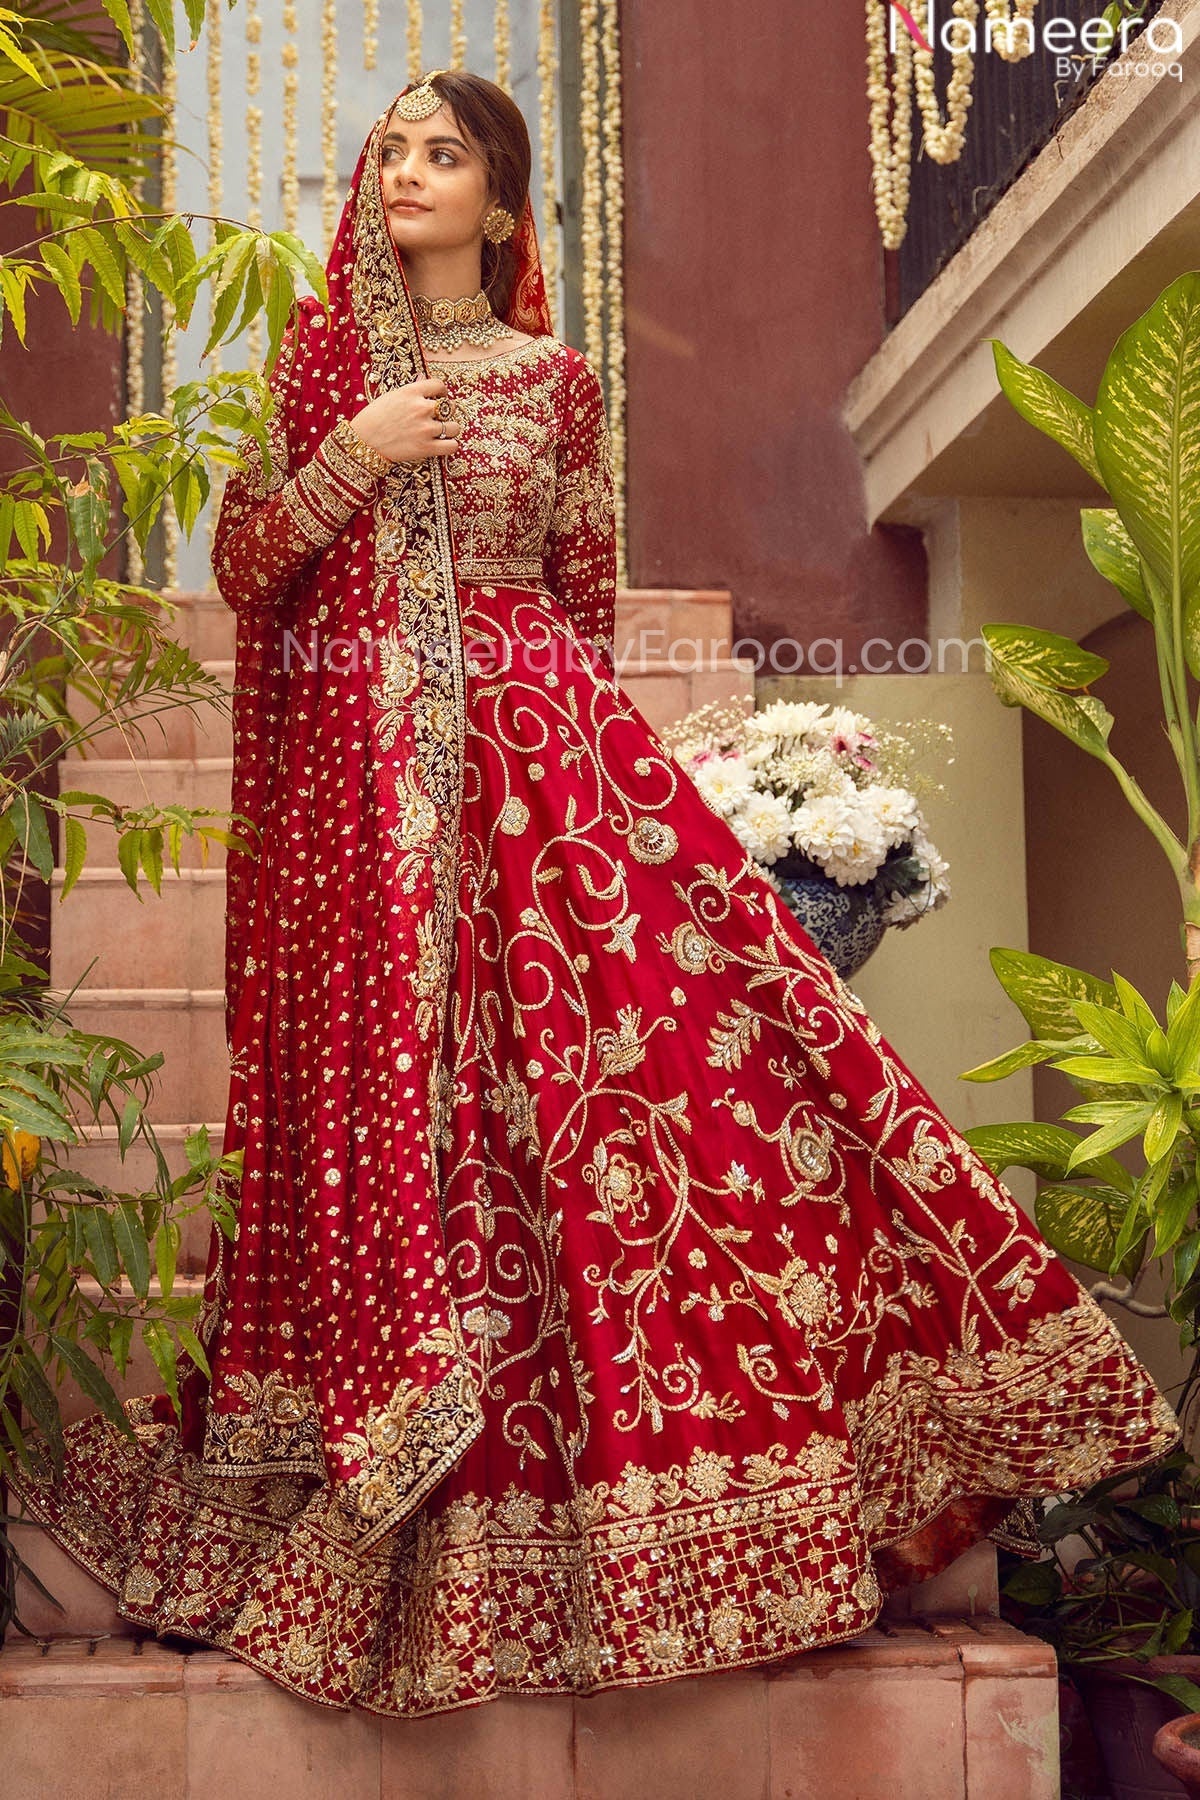 Pretty Red Bridal Dress Pakistani Designer Attire Online 2021 Nameera By Farooq 6355